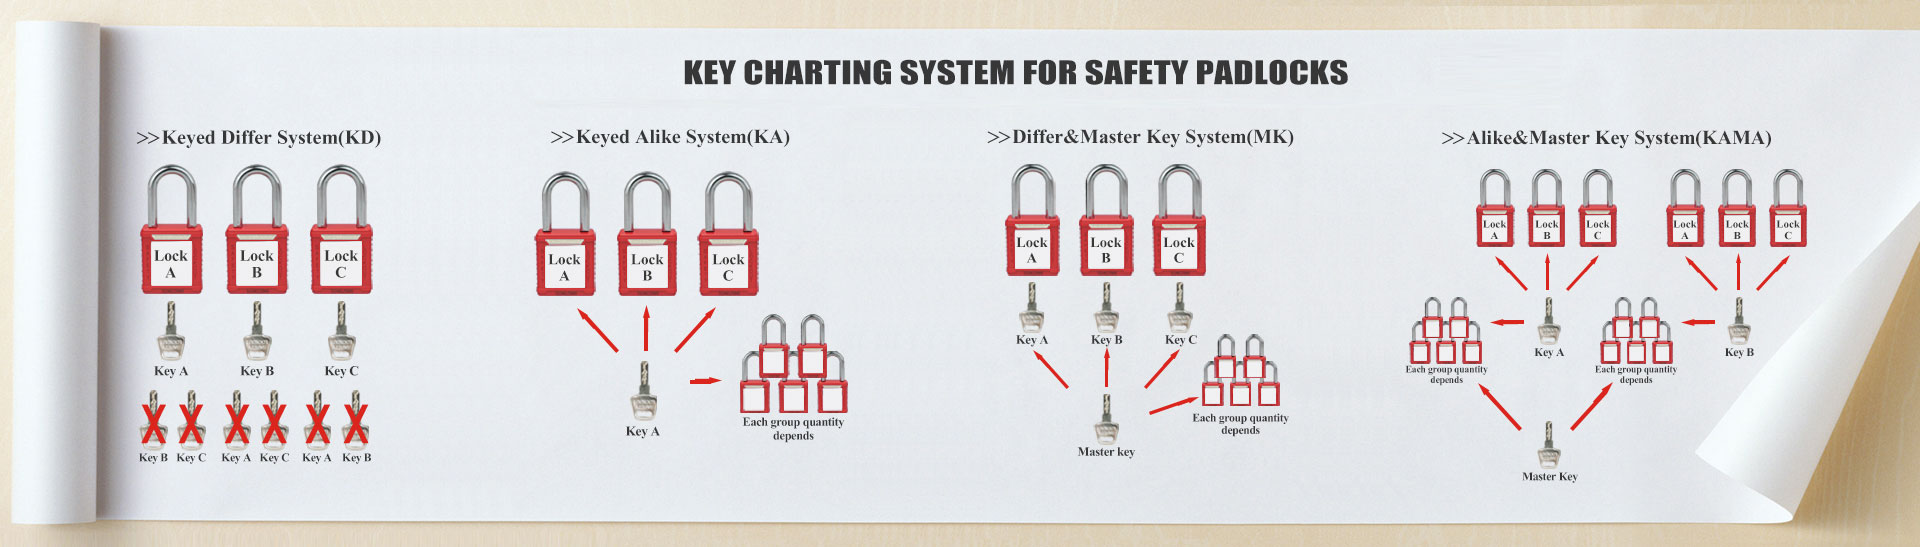 Sistema de gráficos de llaves para candados de seguridad